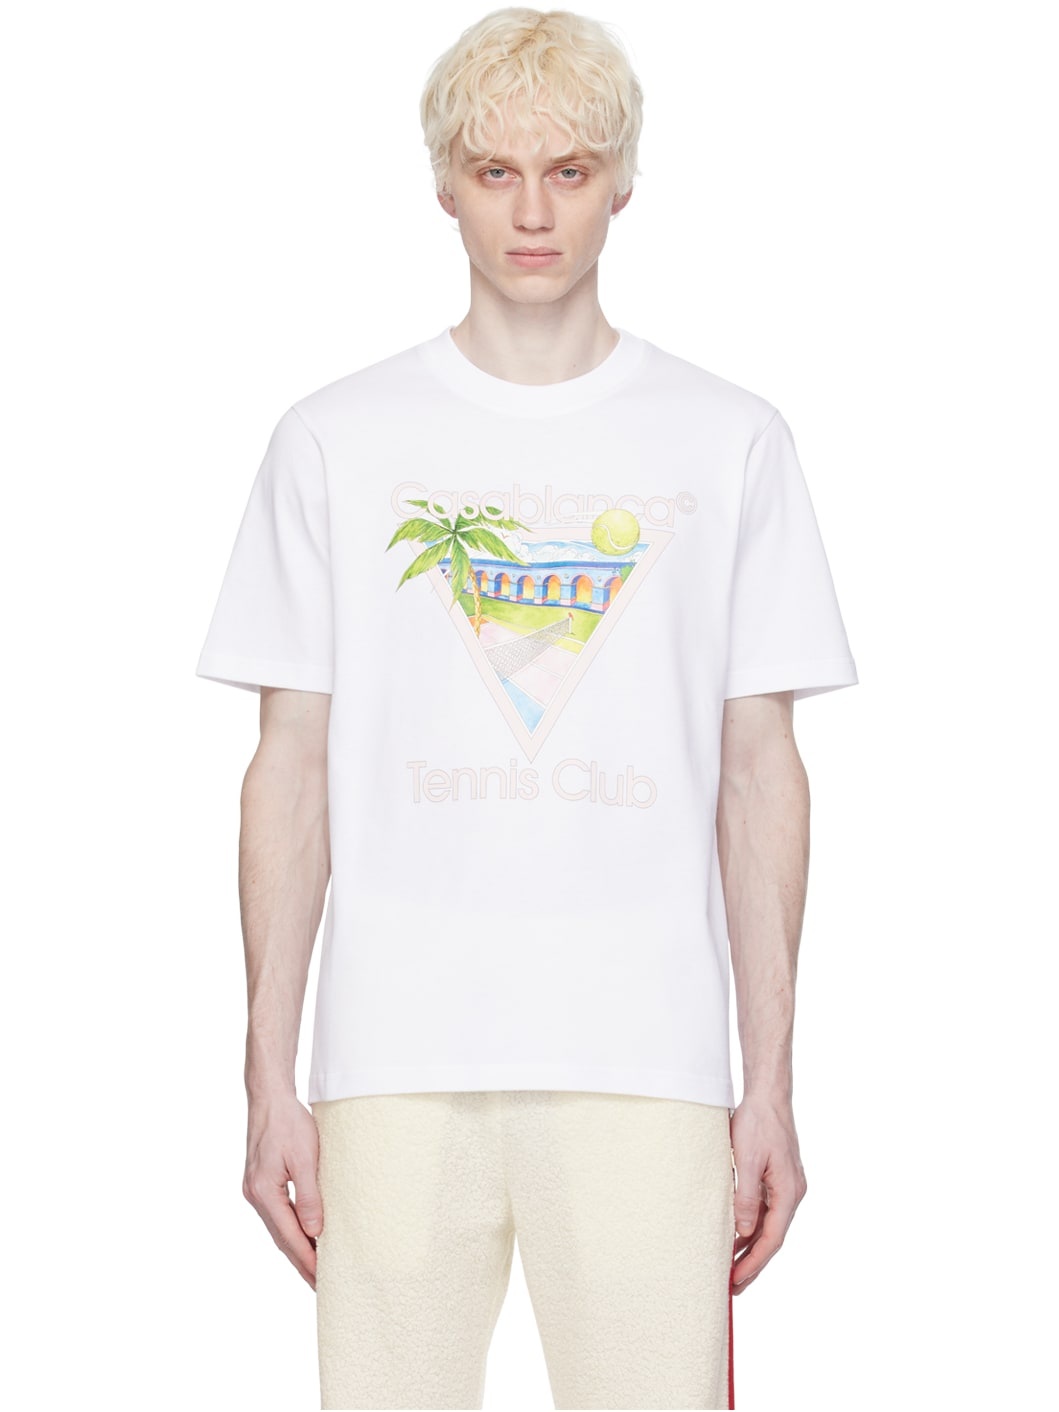 White 'Tennis Club' Icon T-Shirt - 1